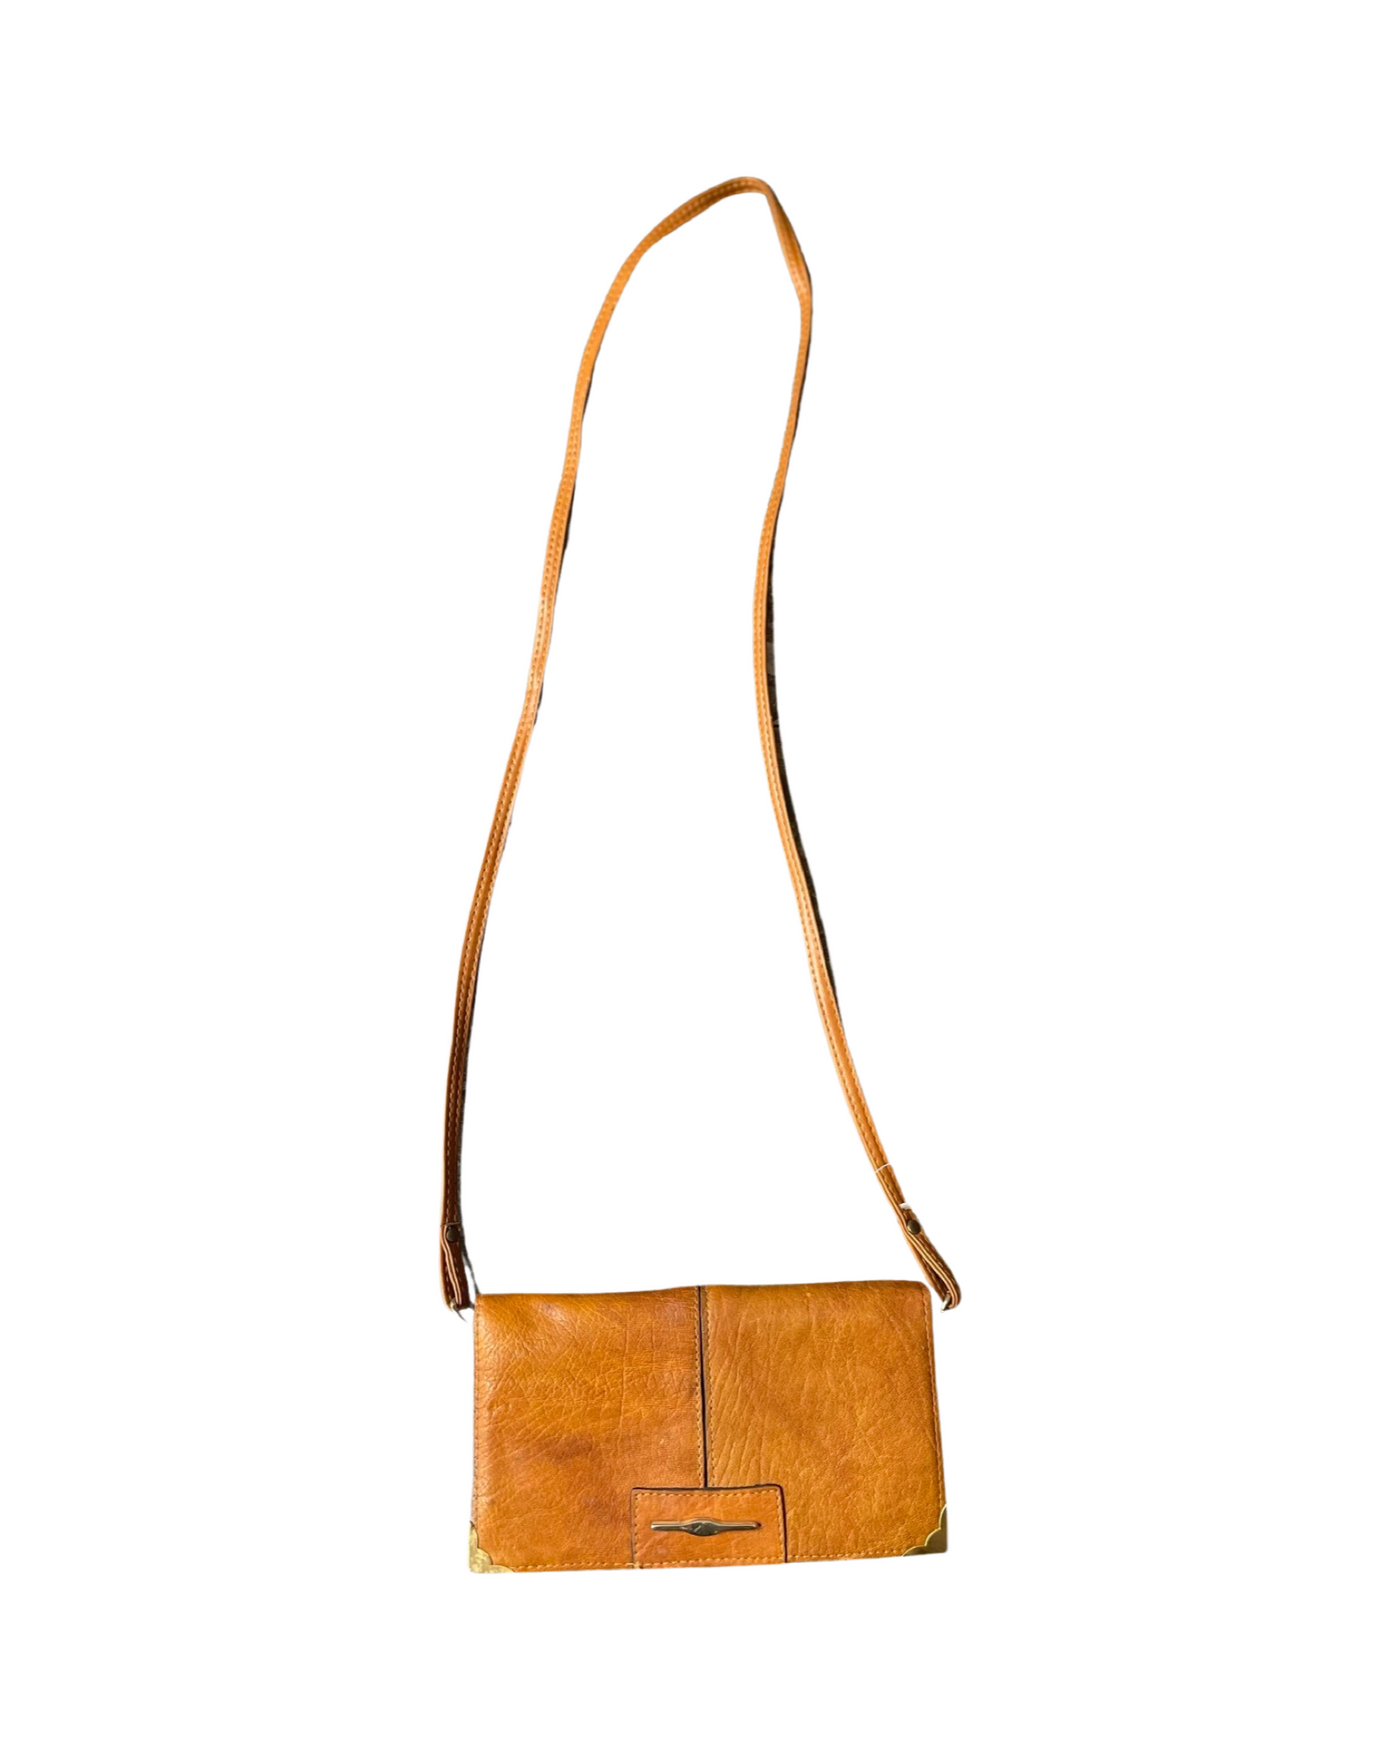 Vintage leather Handbag